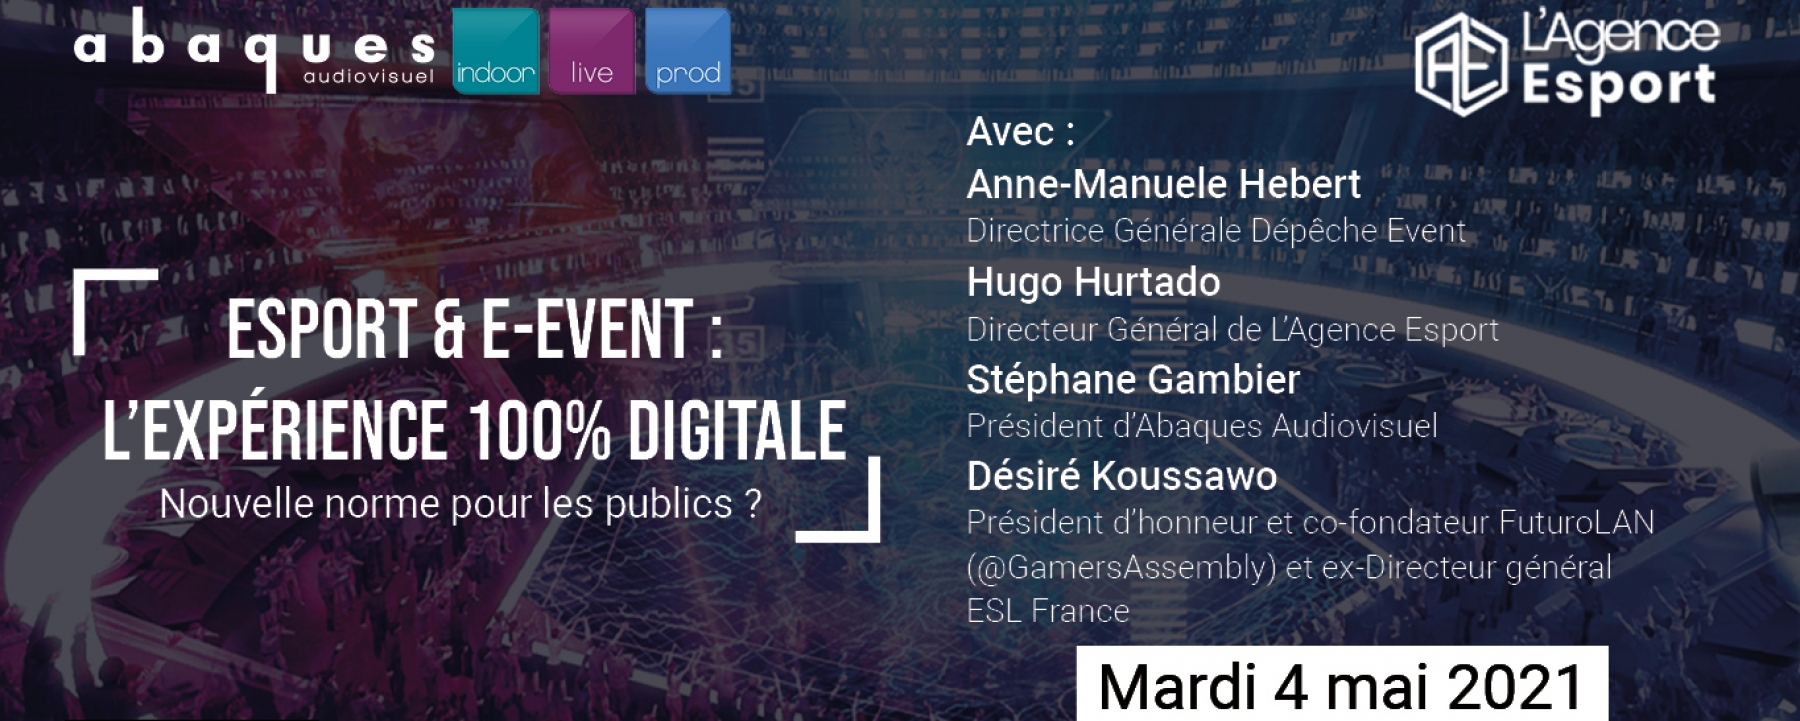 Esport & e-event : l'expérience 100% digitale, le 4 mai 